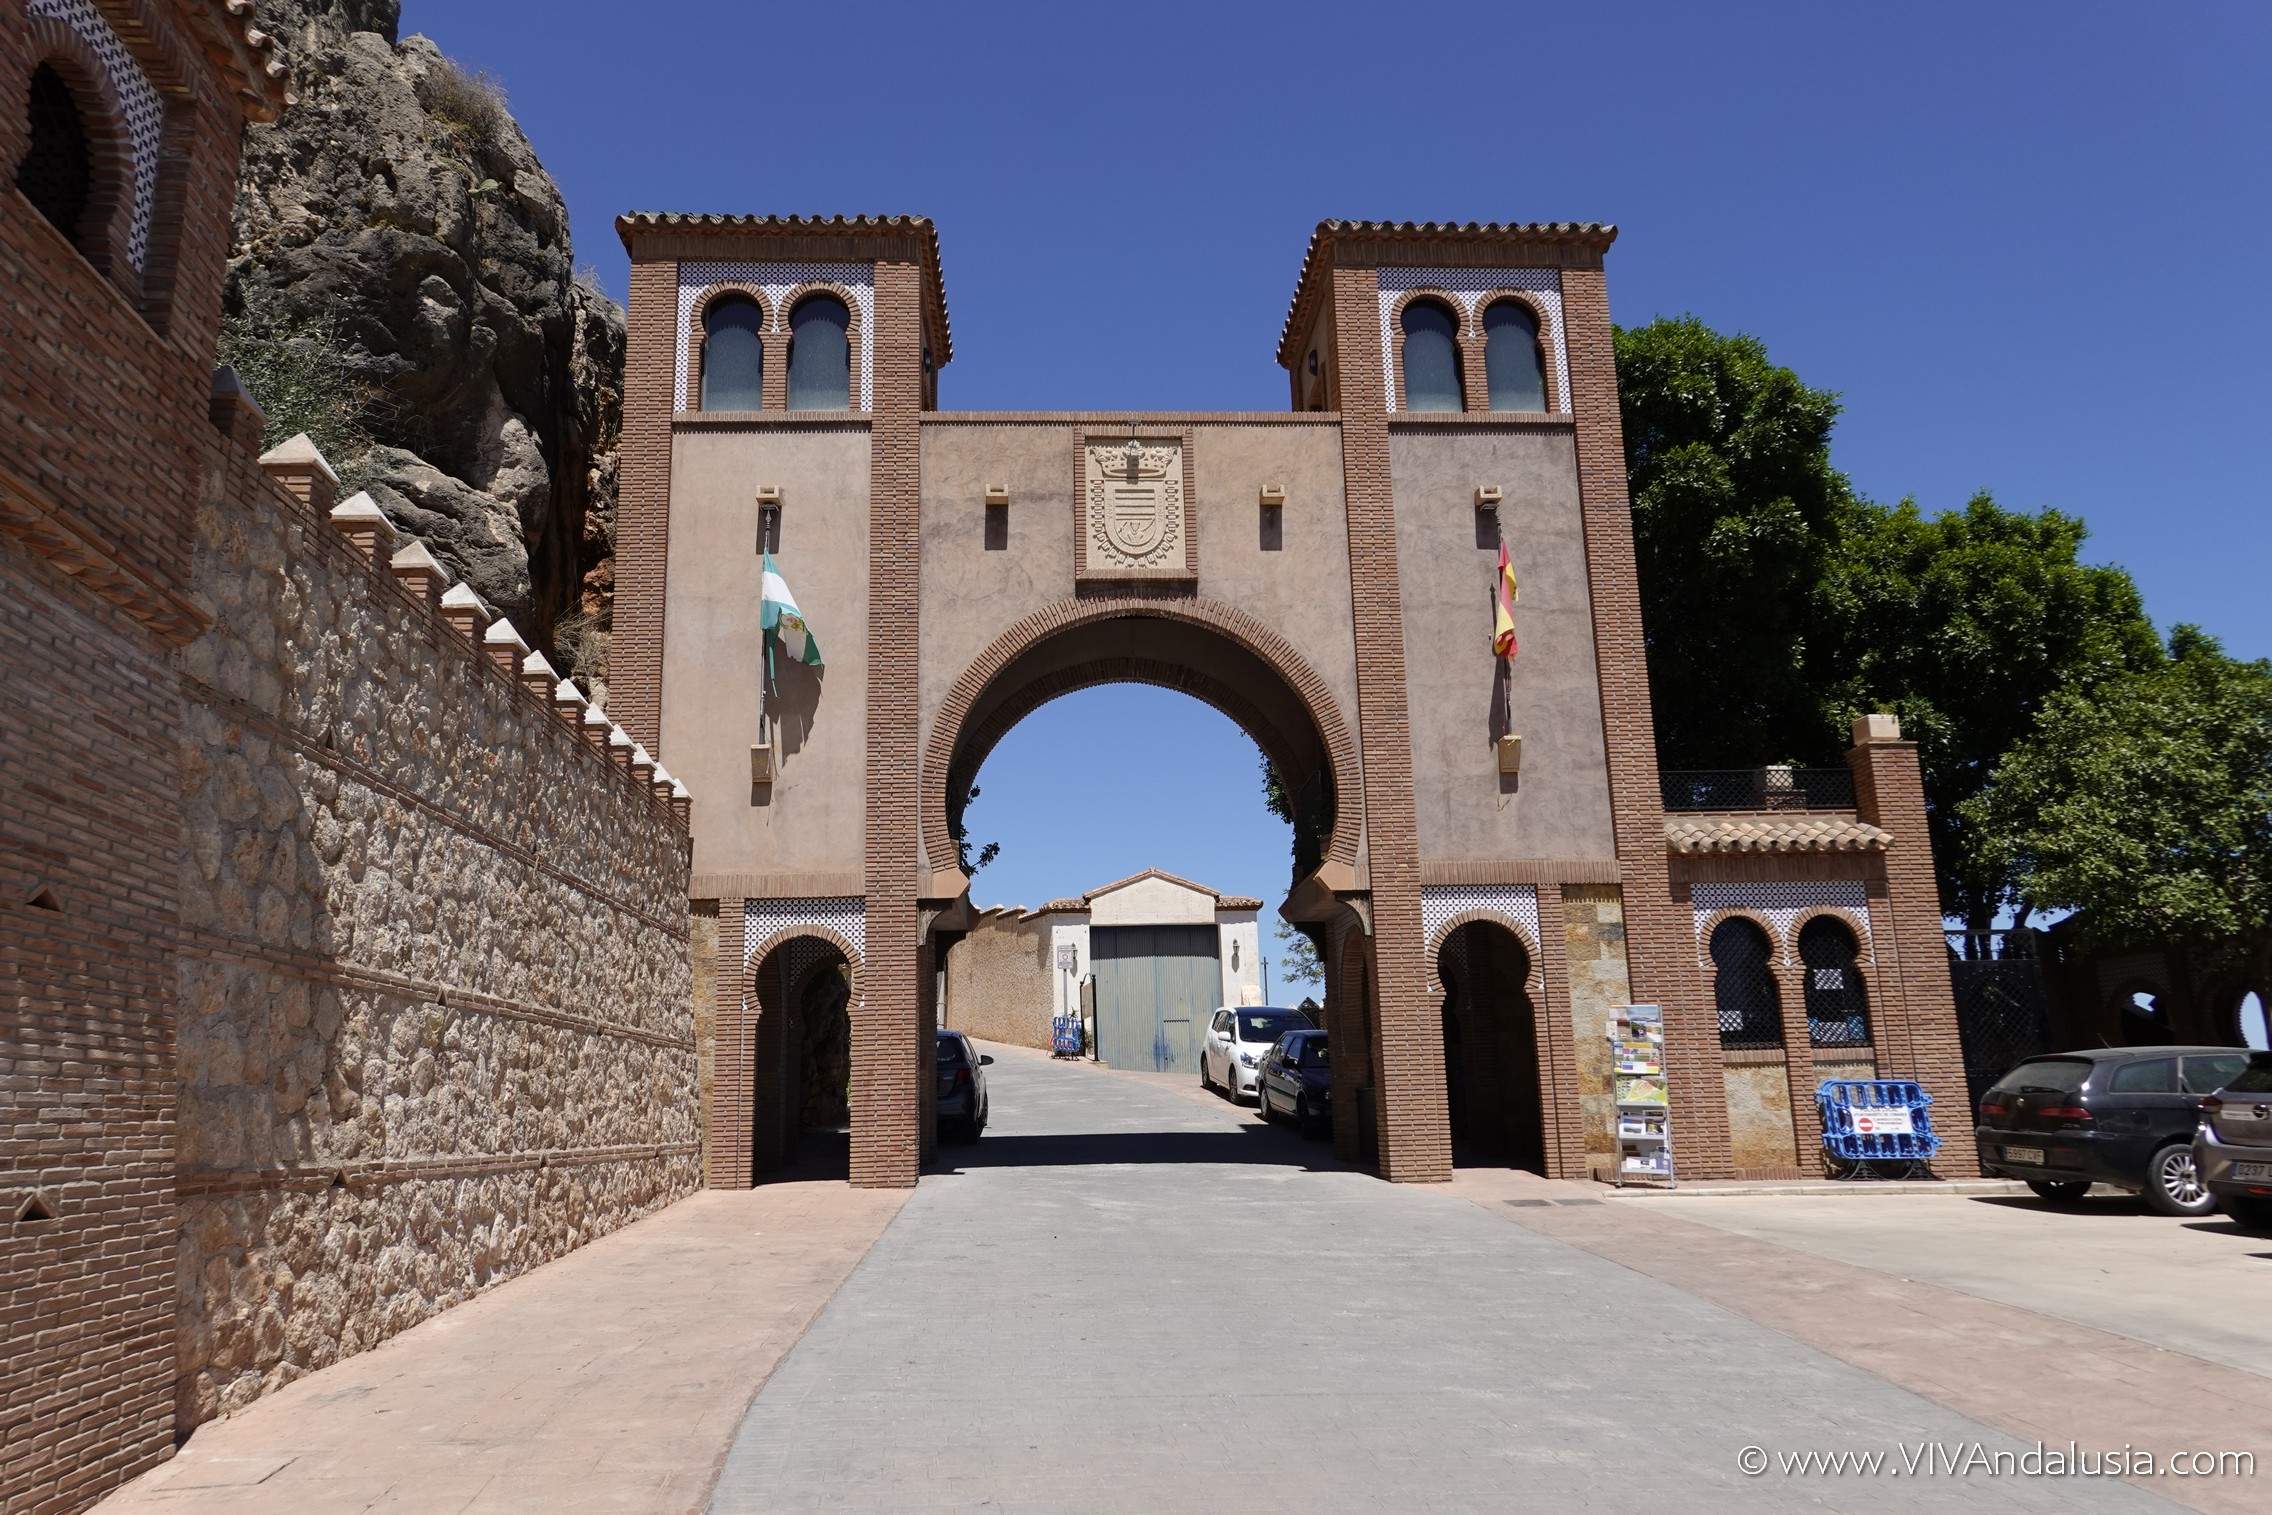 De poort van Malaga. Een belangrijk verdedigingsbastion.